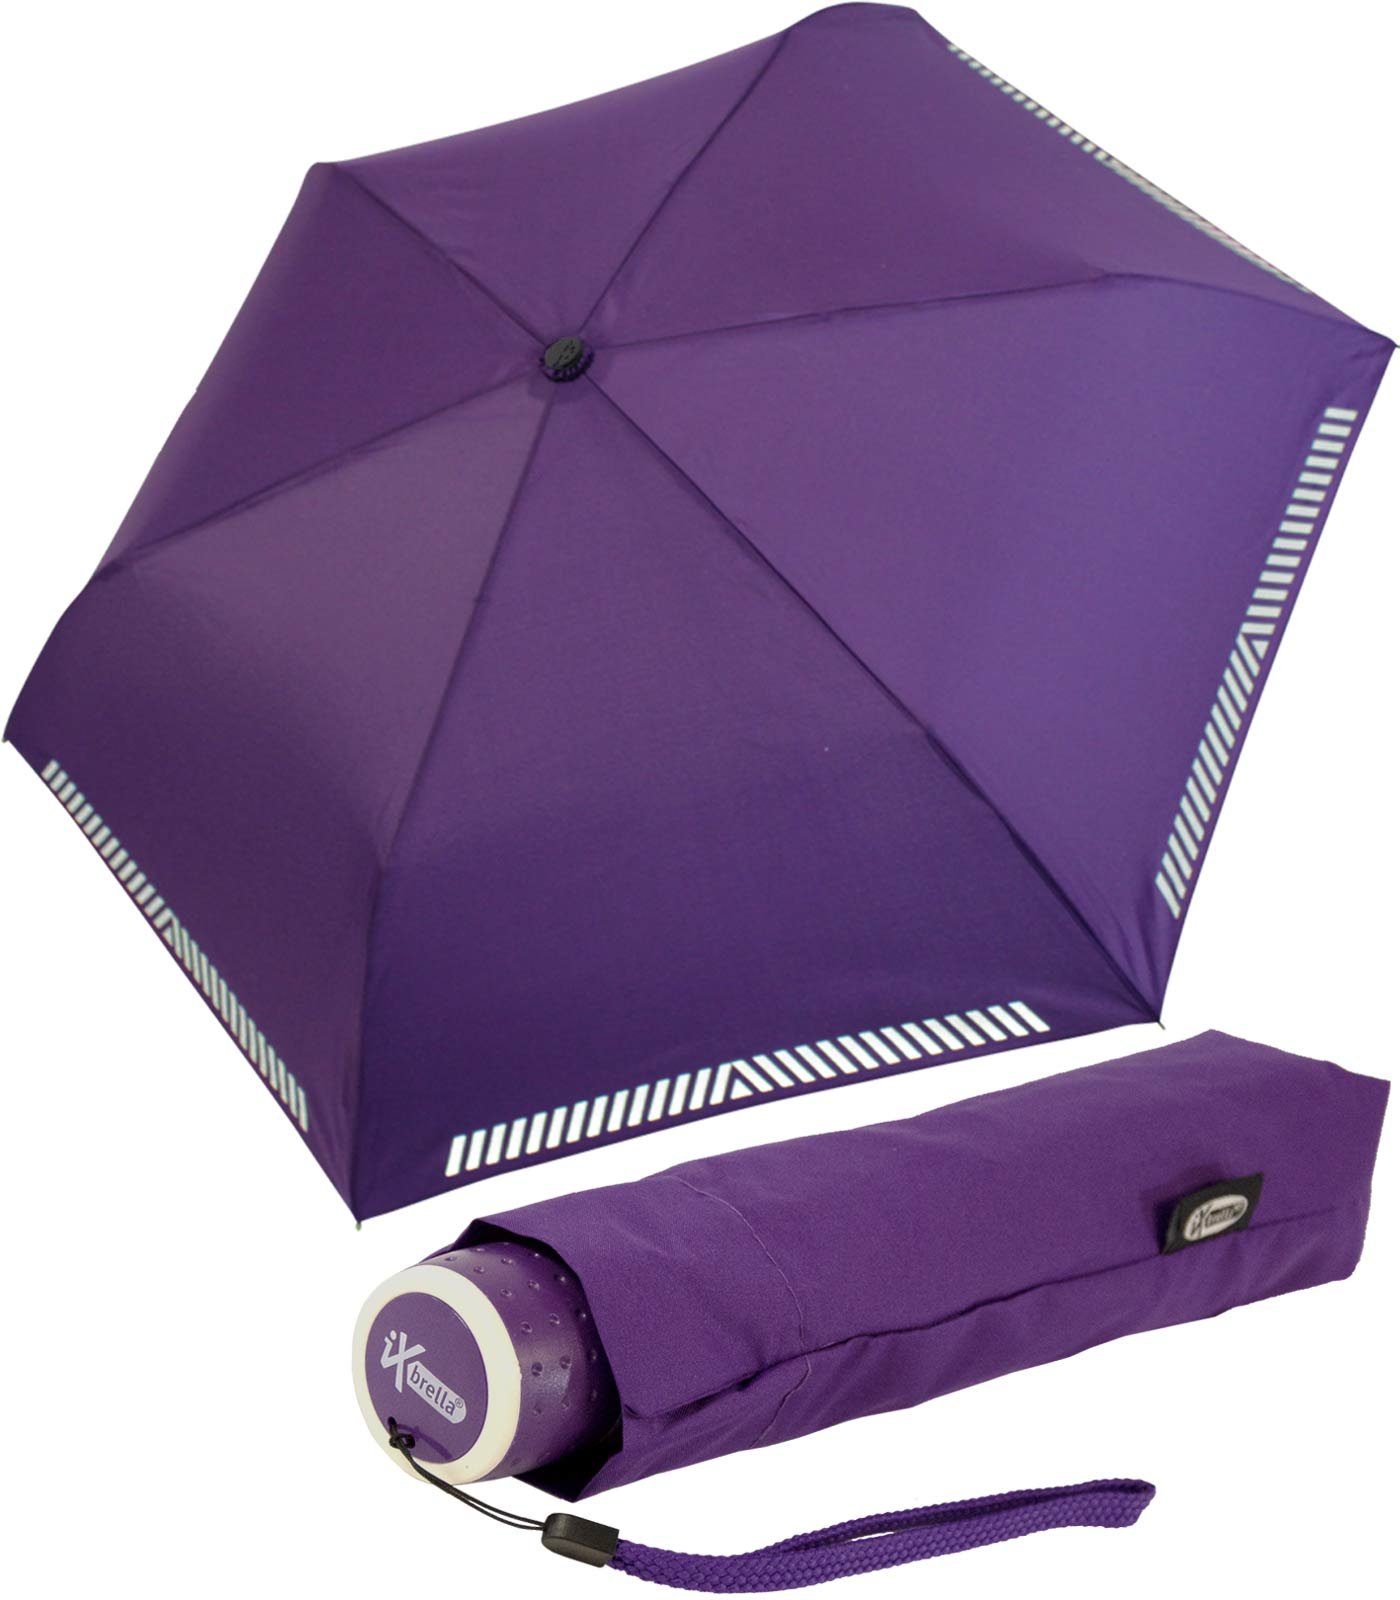 iX-brella Taschenregenschirm Mini Kinderschirm Safety extra reflektierend berry Reflex leicht